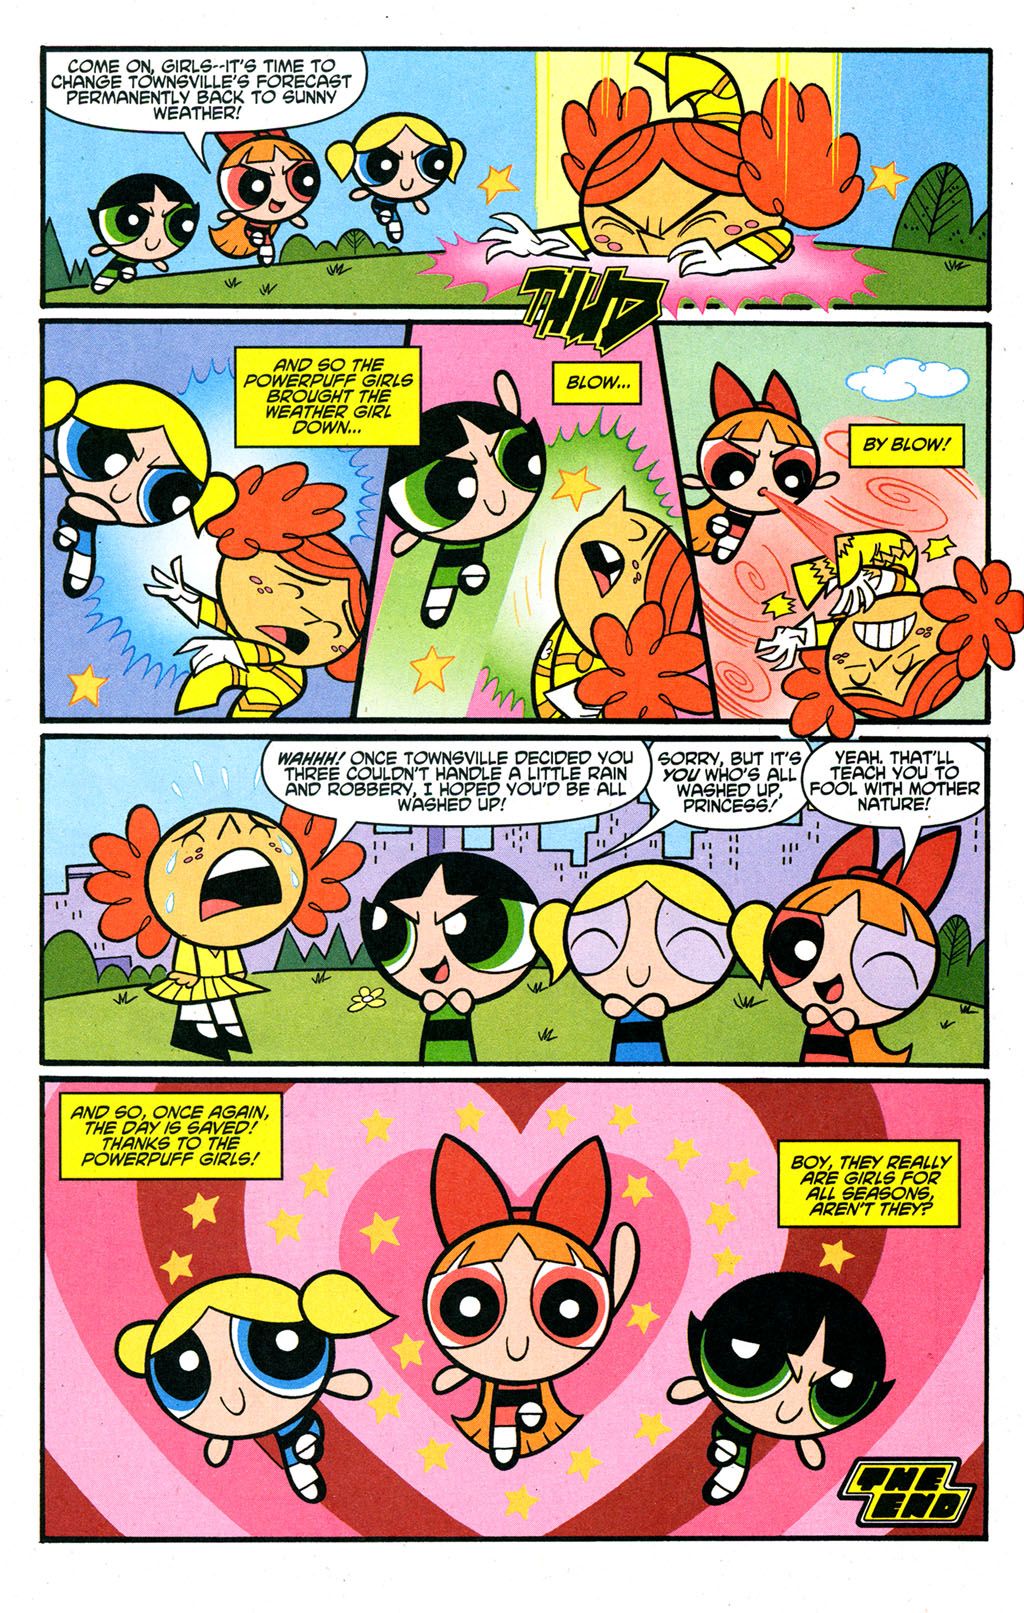 Powerpuff girls comic strips